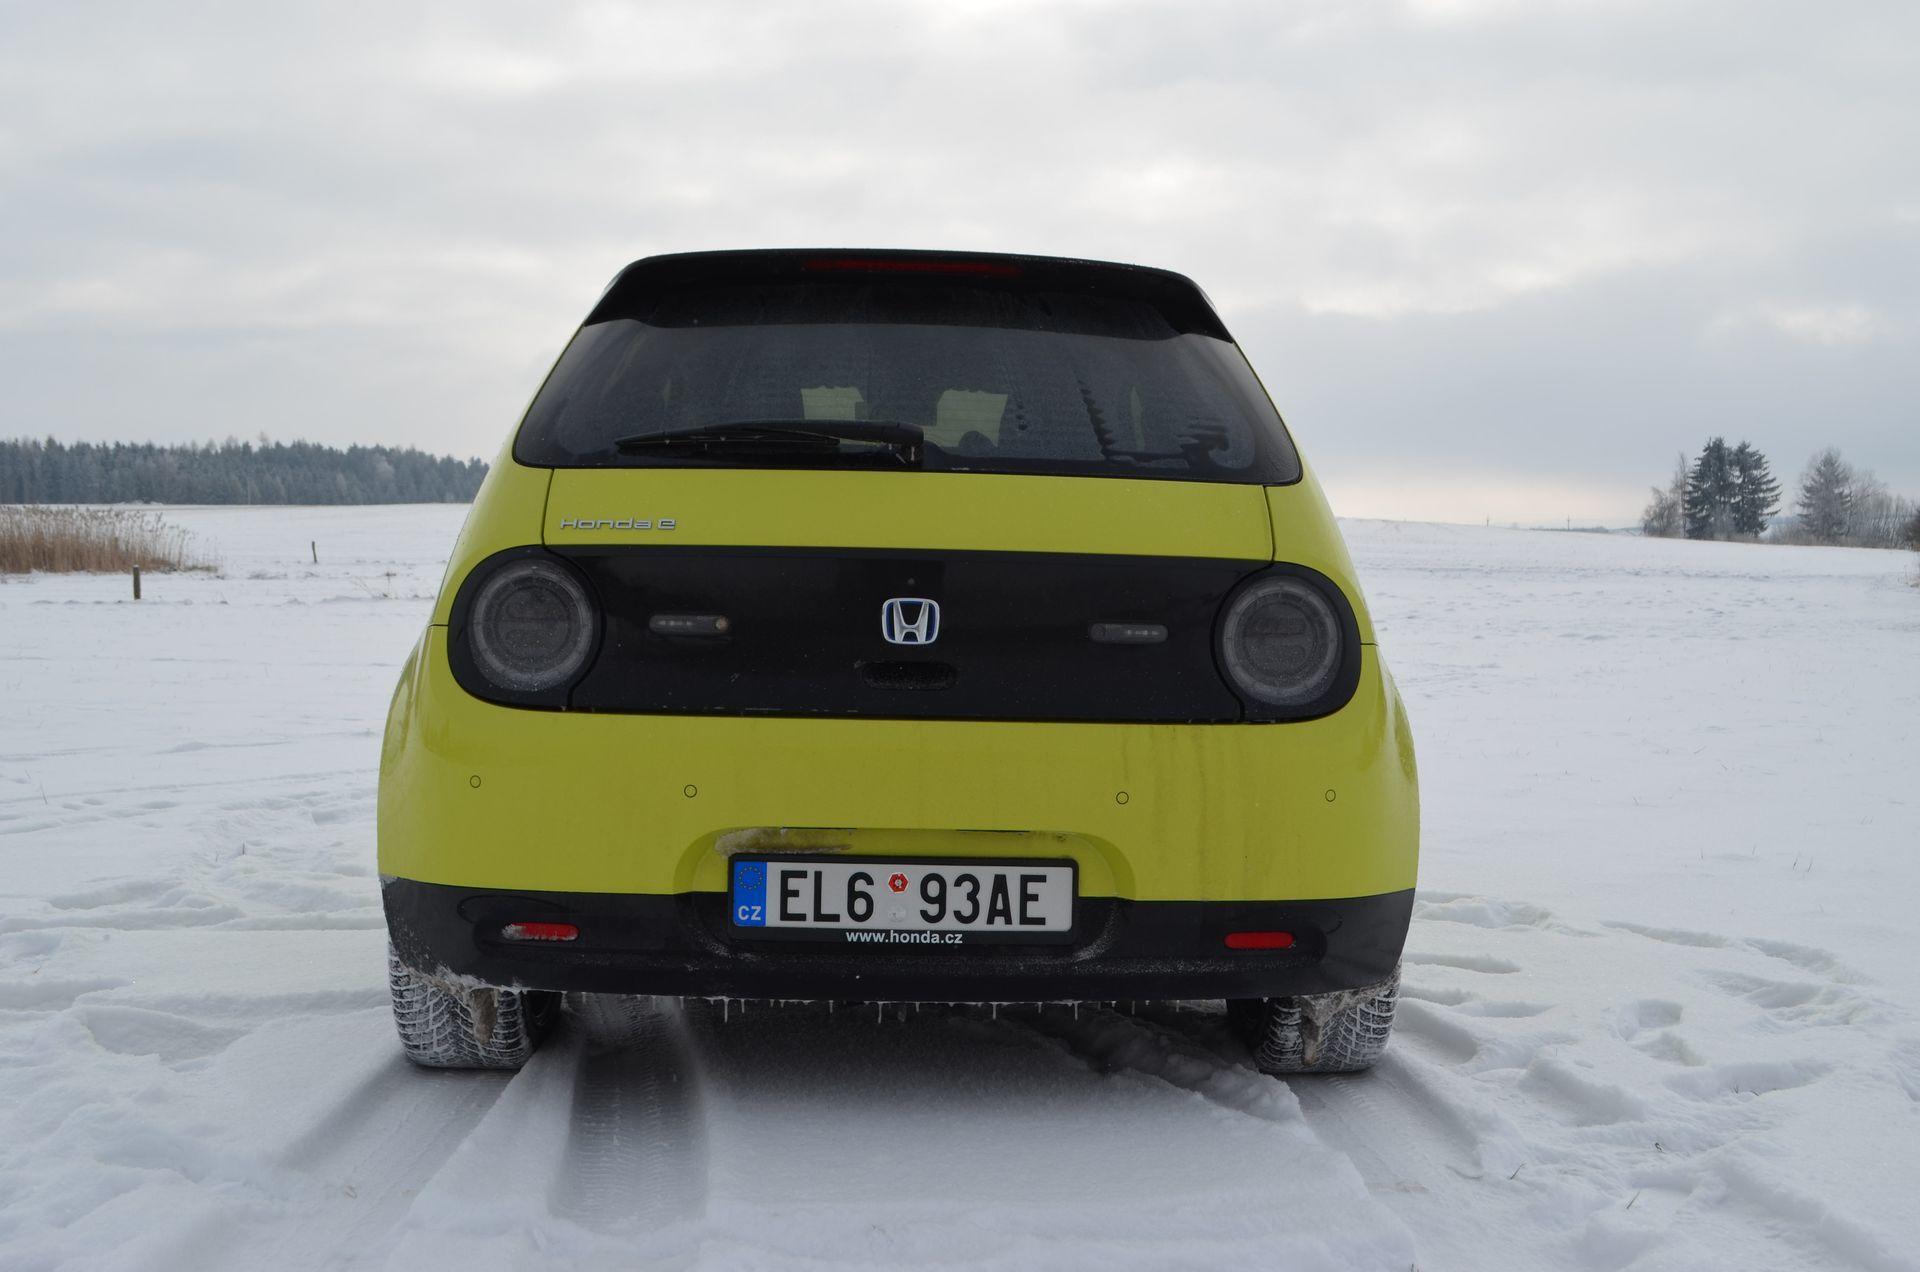 Dojezd elektromobilu v zimě - opravdu je to taková mizérie?